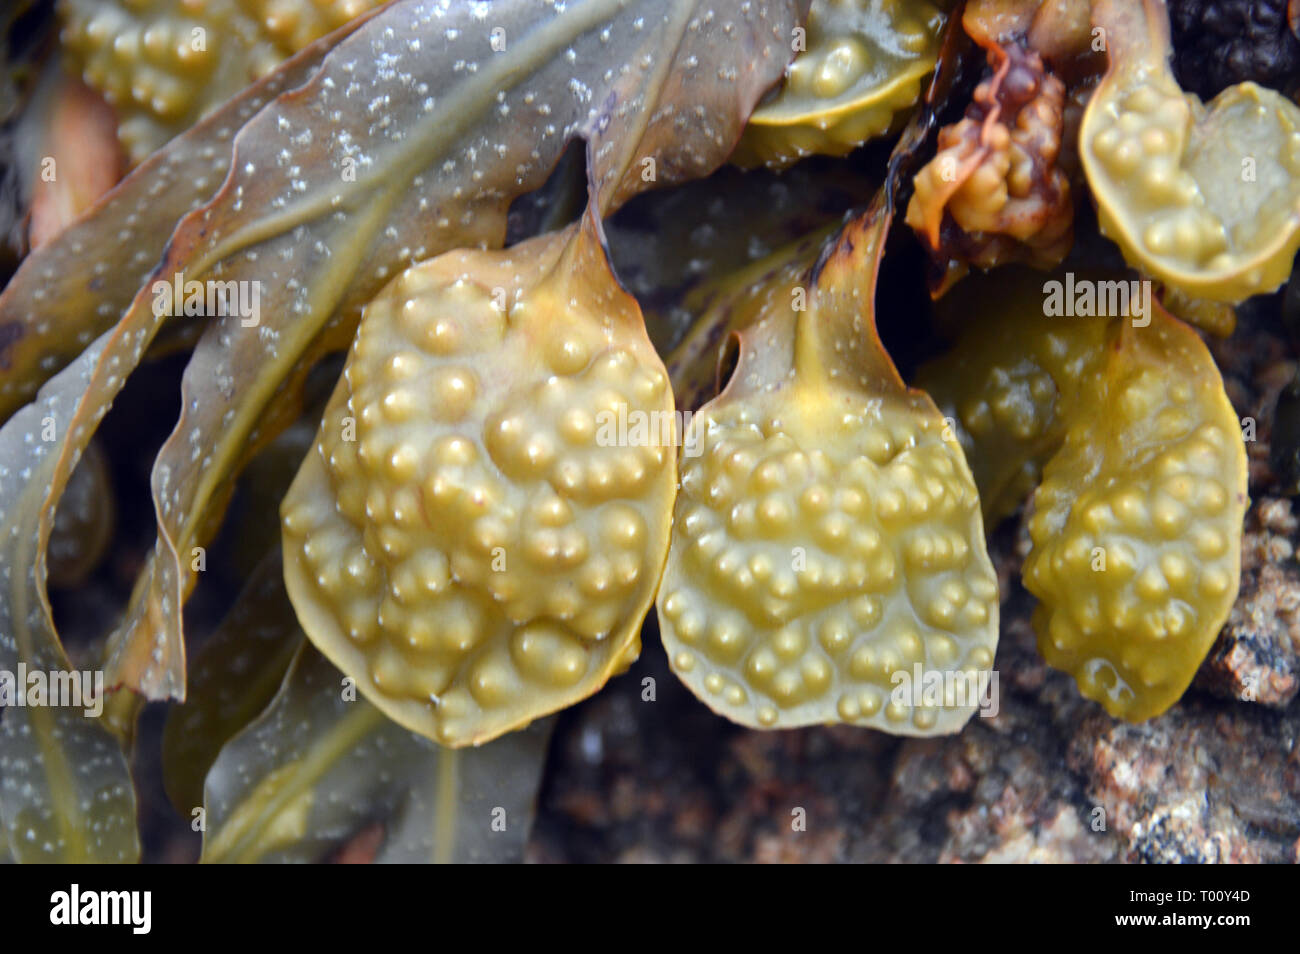 Nahaufnahme der Lufteinschlüsse auf blasentang Fucus vesiculosus Algen'' bei Ebbe aus La Rocque Punkt auf der Insel Jersey, Channel Isles, UK. Stockfoto